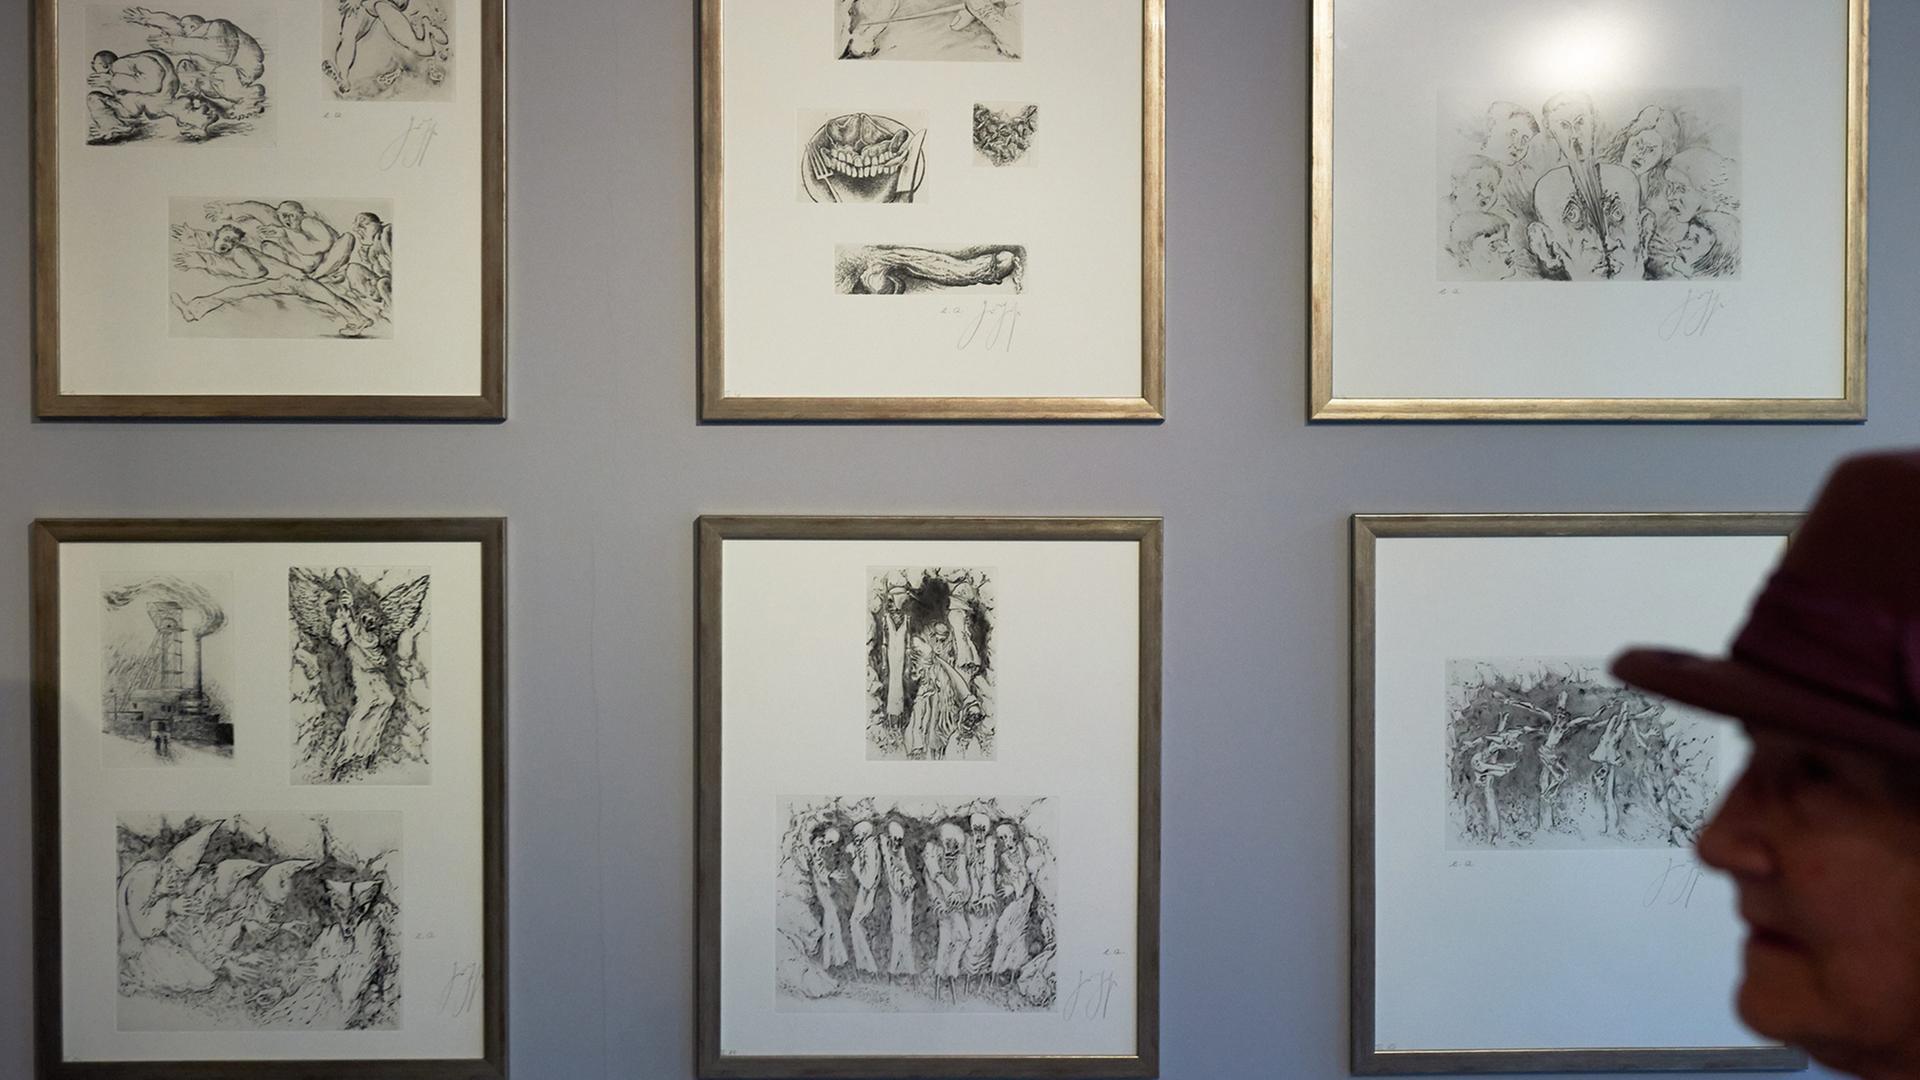 Radierungen von Günter Grass sind in der Ausstellung "Hundejahre" in Danzig zu sehen.